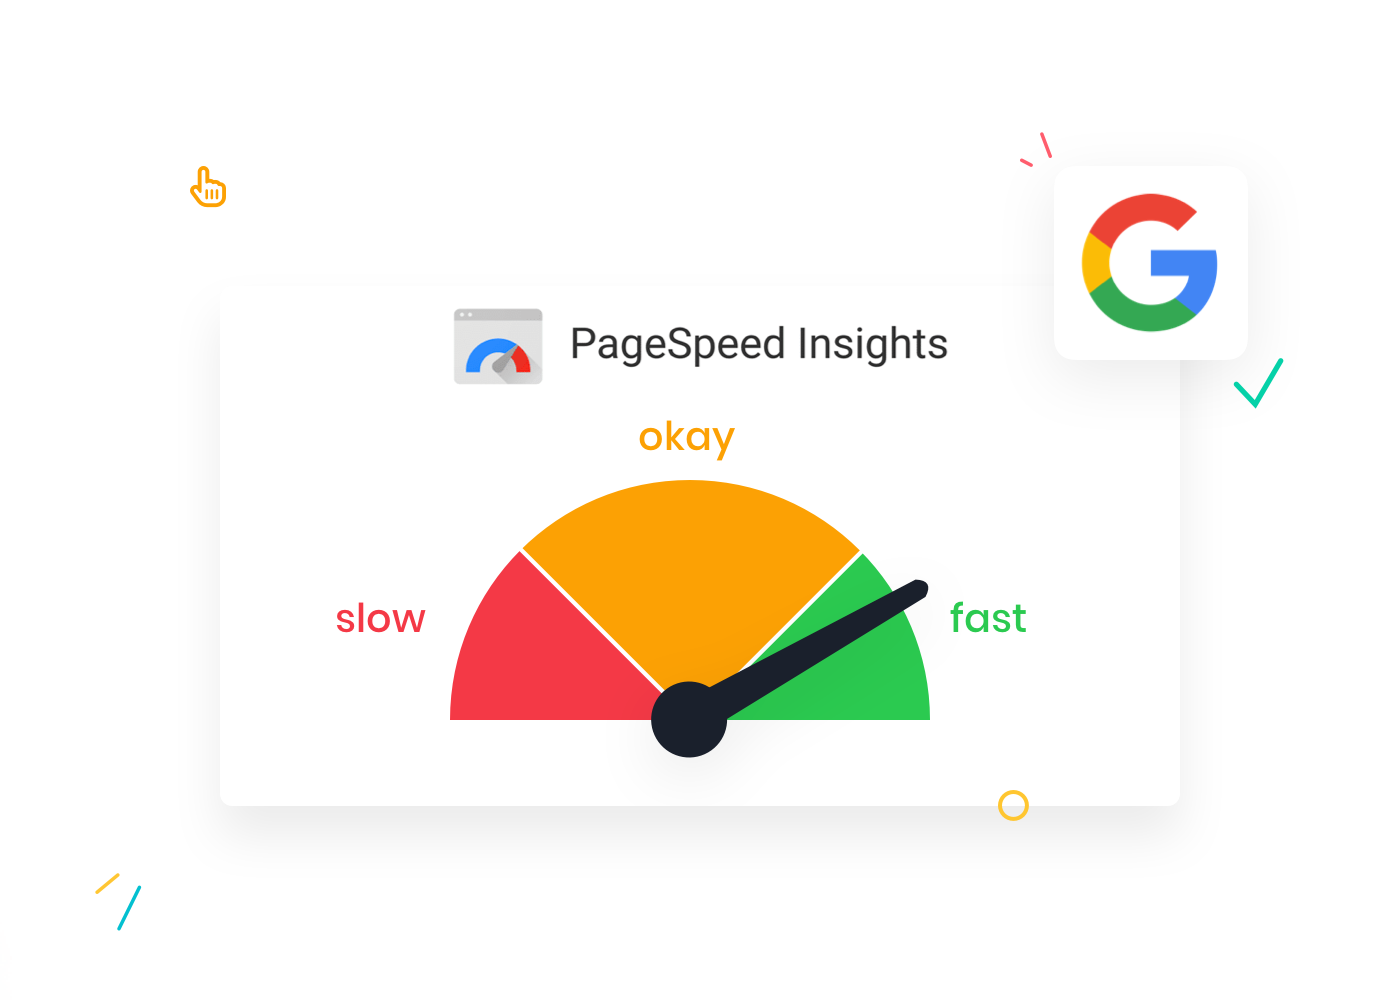 Met Google PageSpeed Insights 2022 werd een handige tool geïntroduceerd waarmee je laadsnelheid test